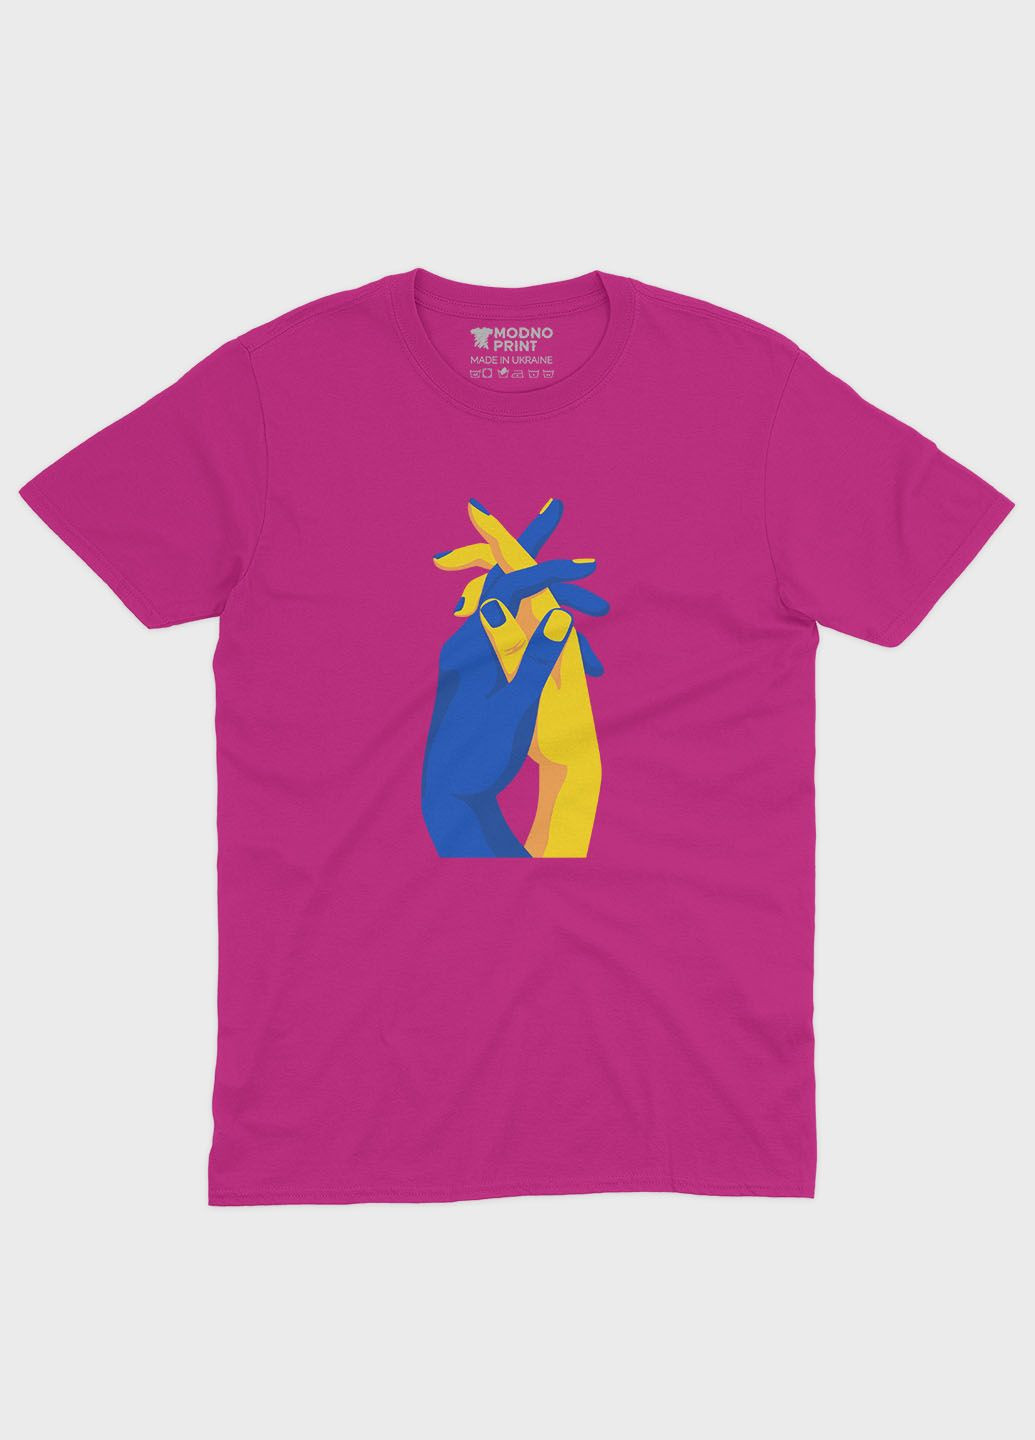 Розовая демисезонная футболка для мальчика с патриотическим принтом лодони (ts001-2-fuxj-005-1-032-b) Modno